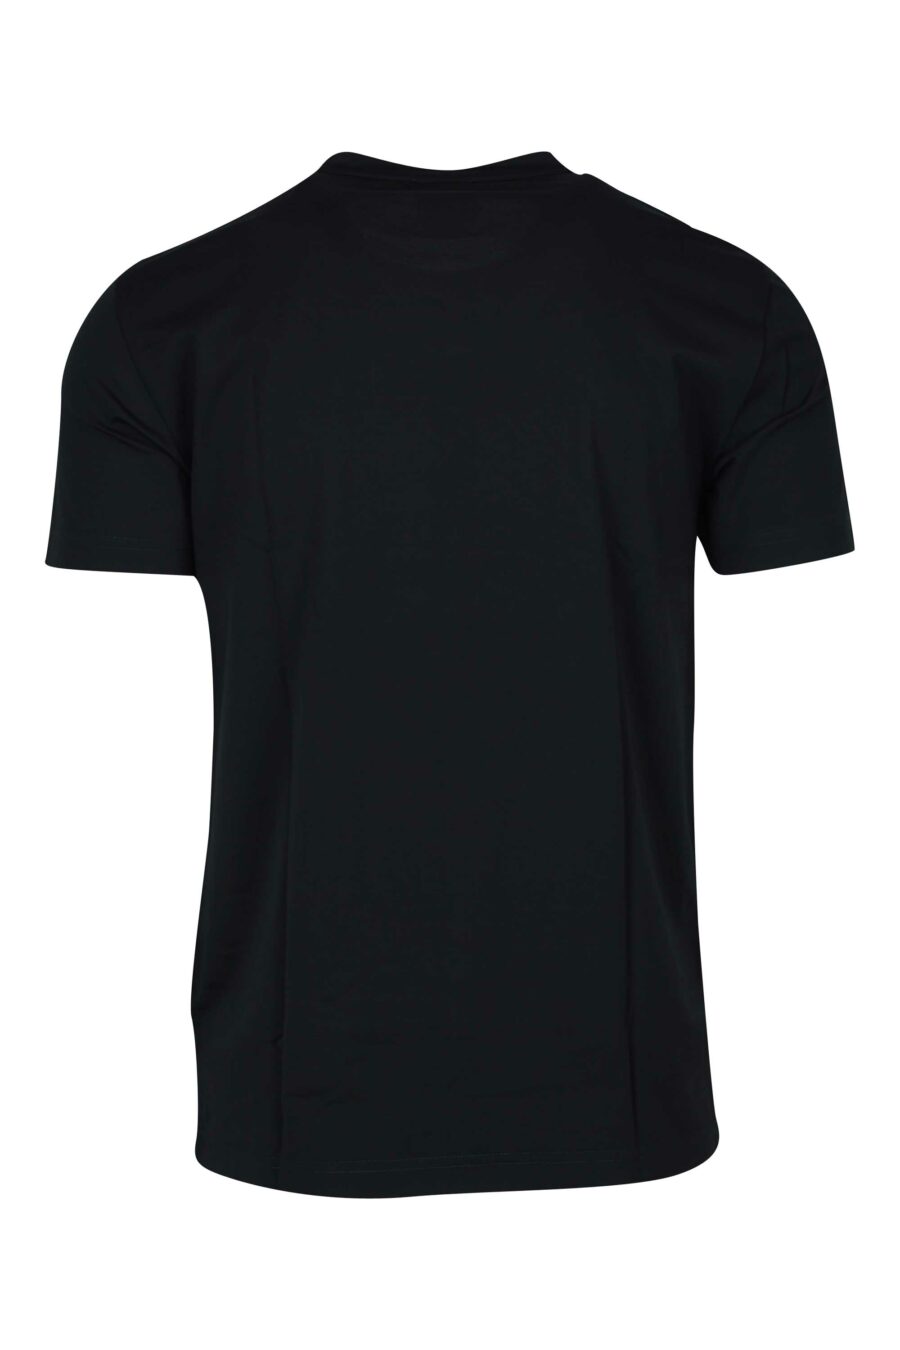 T-shirt noir avec écusson "lux identity" de minilogue - 8056787978973 1